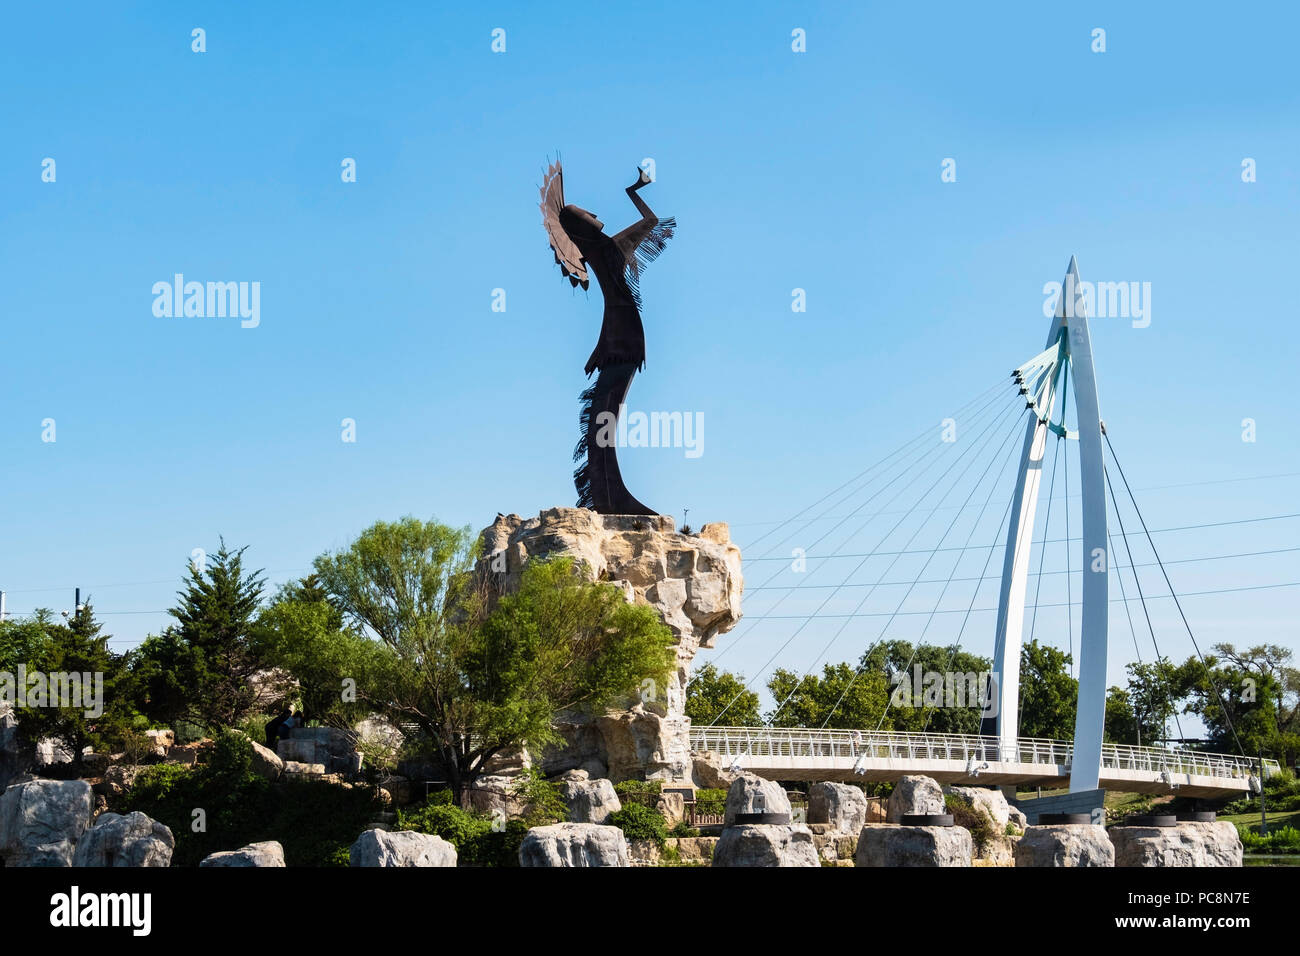 Hüter der Plains, eine stählerne Skulptur von Blackbear Bosin. Wichita, Kansas, USA. Sichtbar ist ein Fußgänger-Hängebrücke. Stockfoto